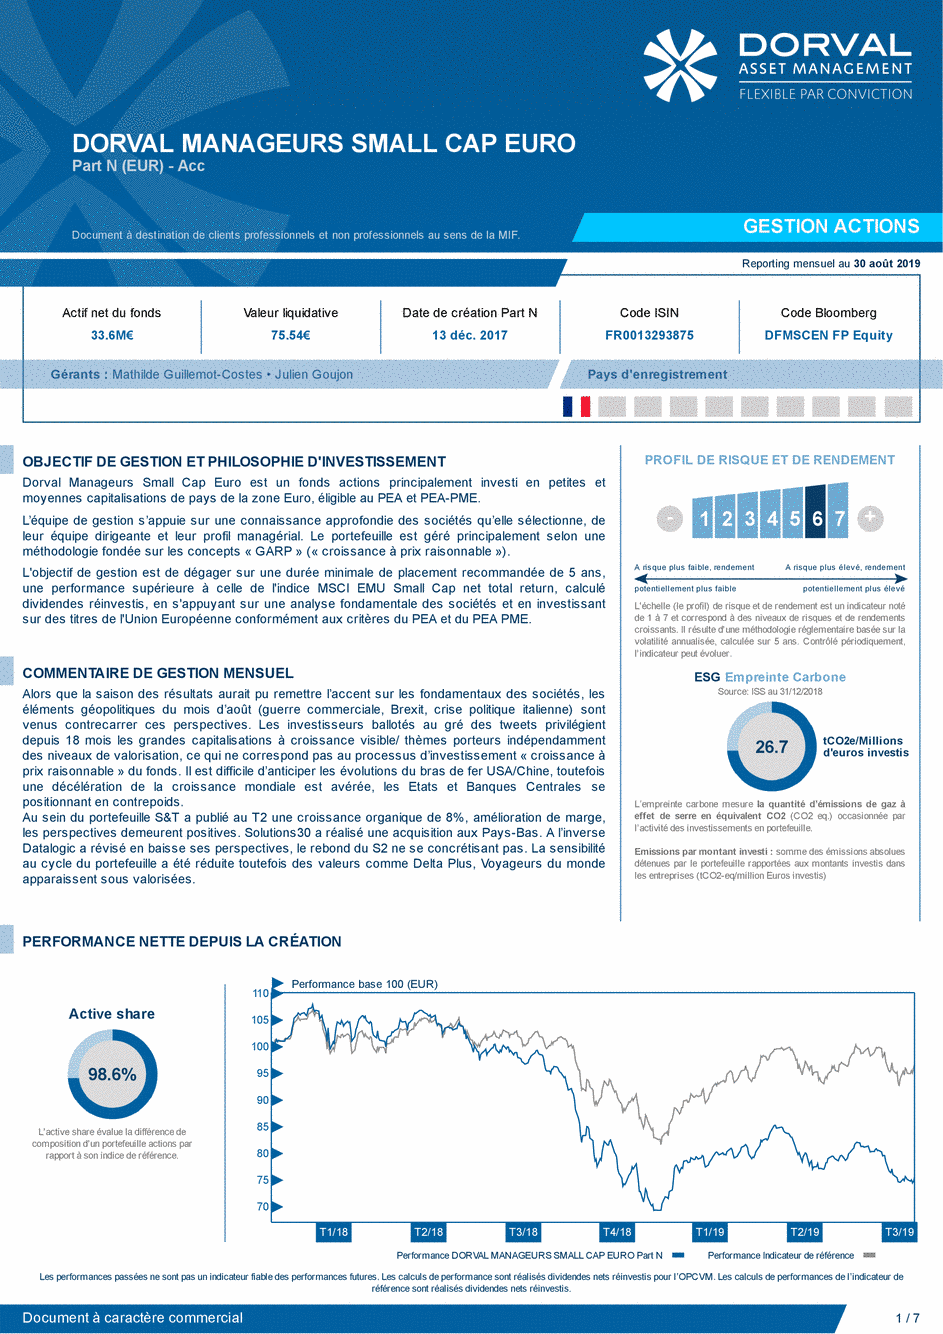 Reporting DORVAL MANAGEURS SMALL CAP EURO N - 30/08/2019 - Français